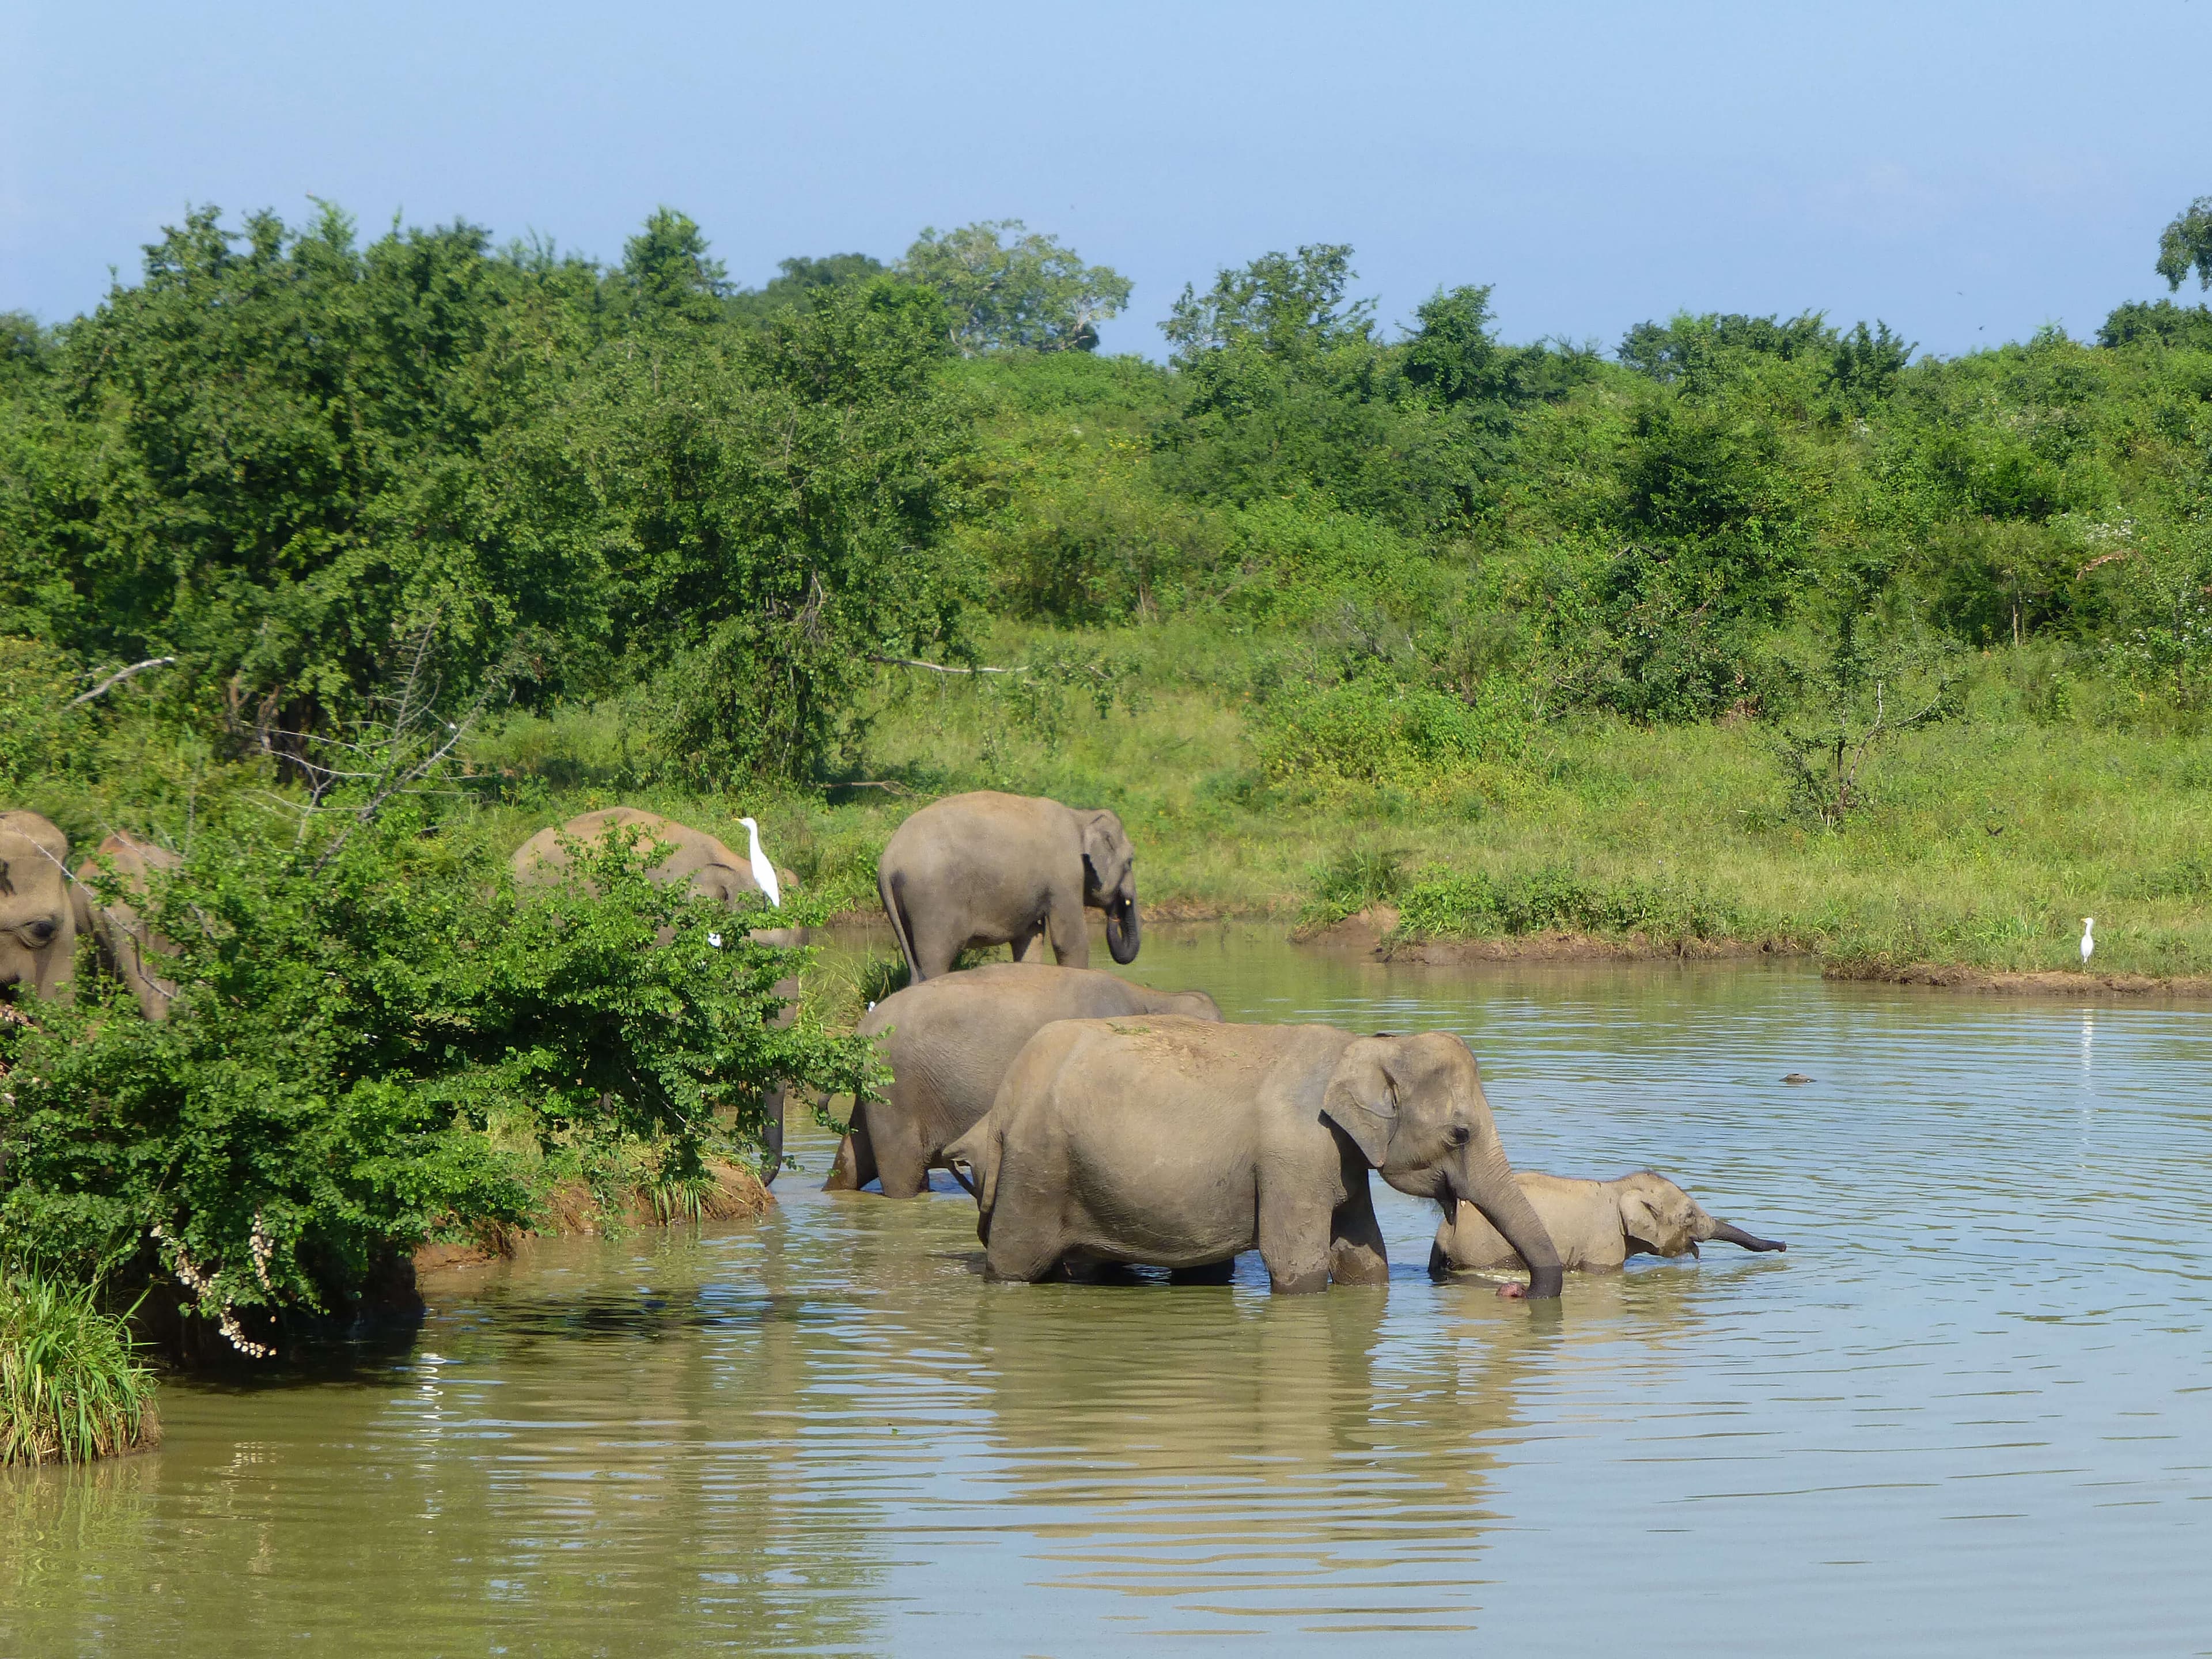 مجموعة من الأفيال تستحم في الماء في أوداوالاوي سريلانكا